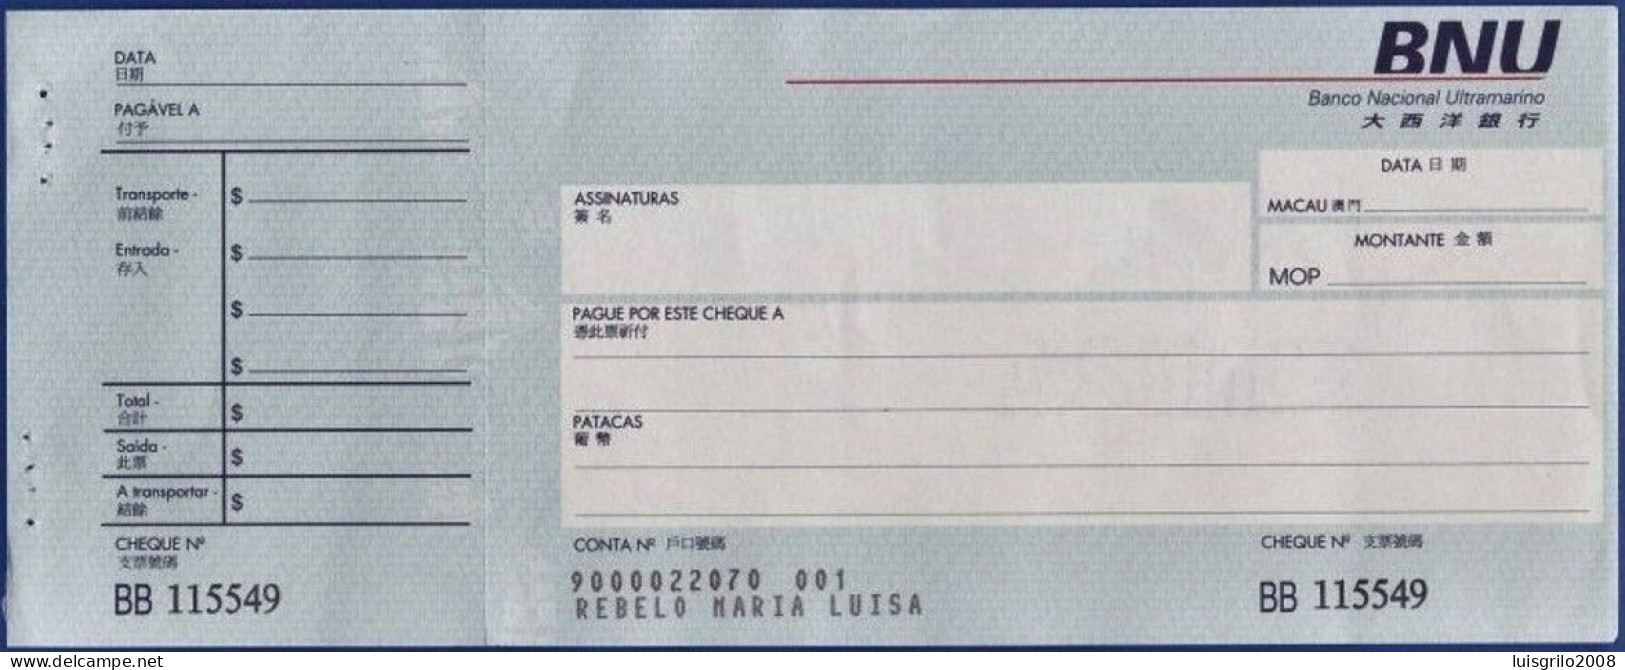 Macau, Portugal, Cheque - Banco Nacional Ultramarino -|- Nº BB115549 - Cheques En Traveller's Cheques